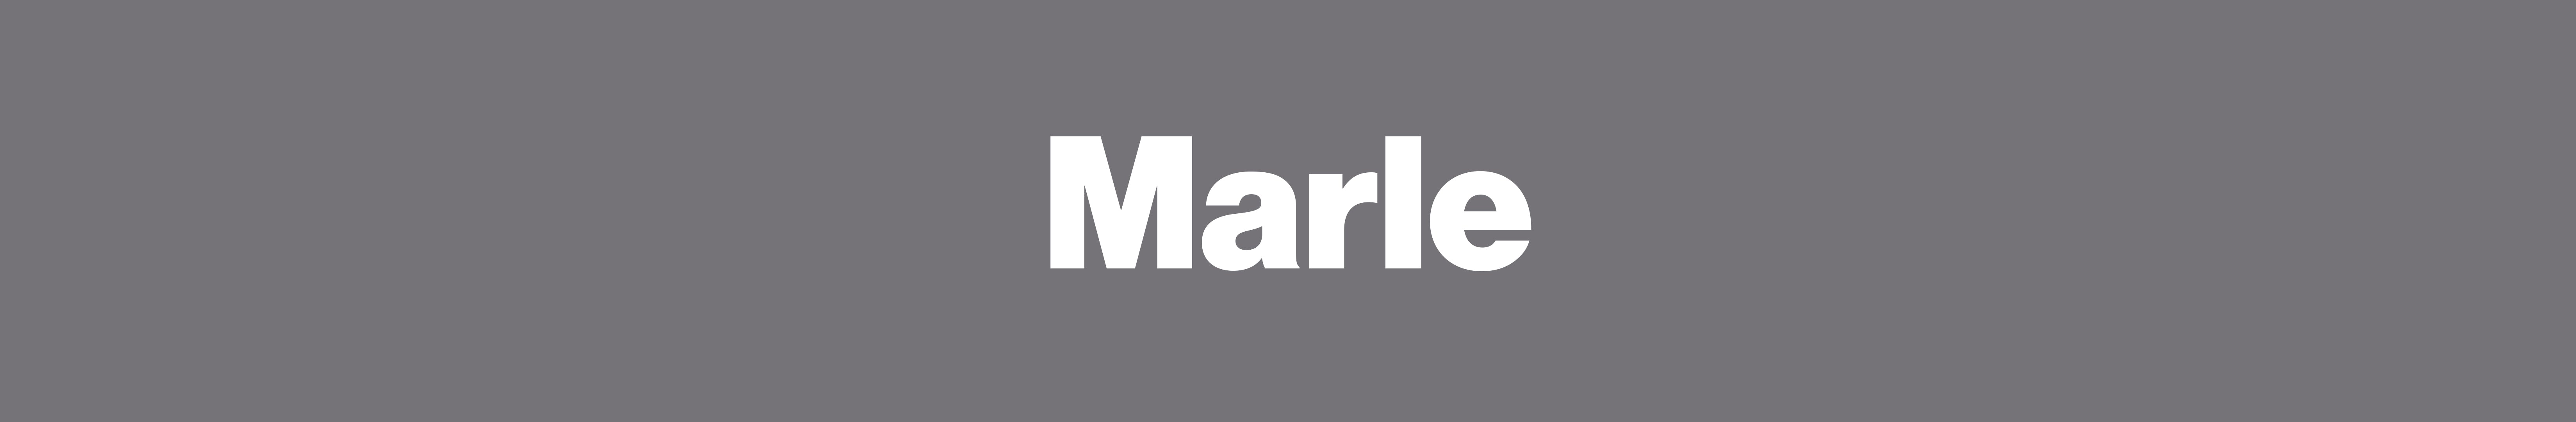 Marle Colour Header.jpg__PID:58a8cd94-b3b3-4317-a362-2060e0fae8c9